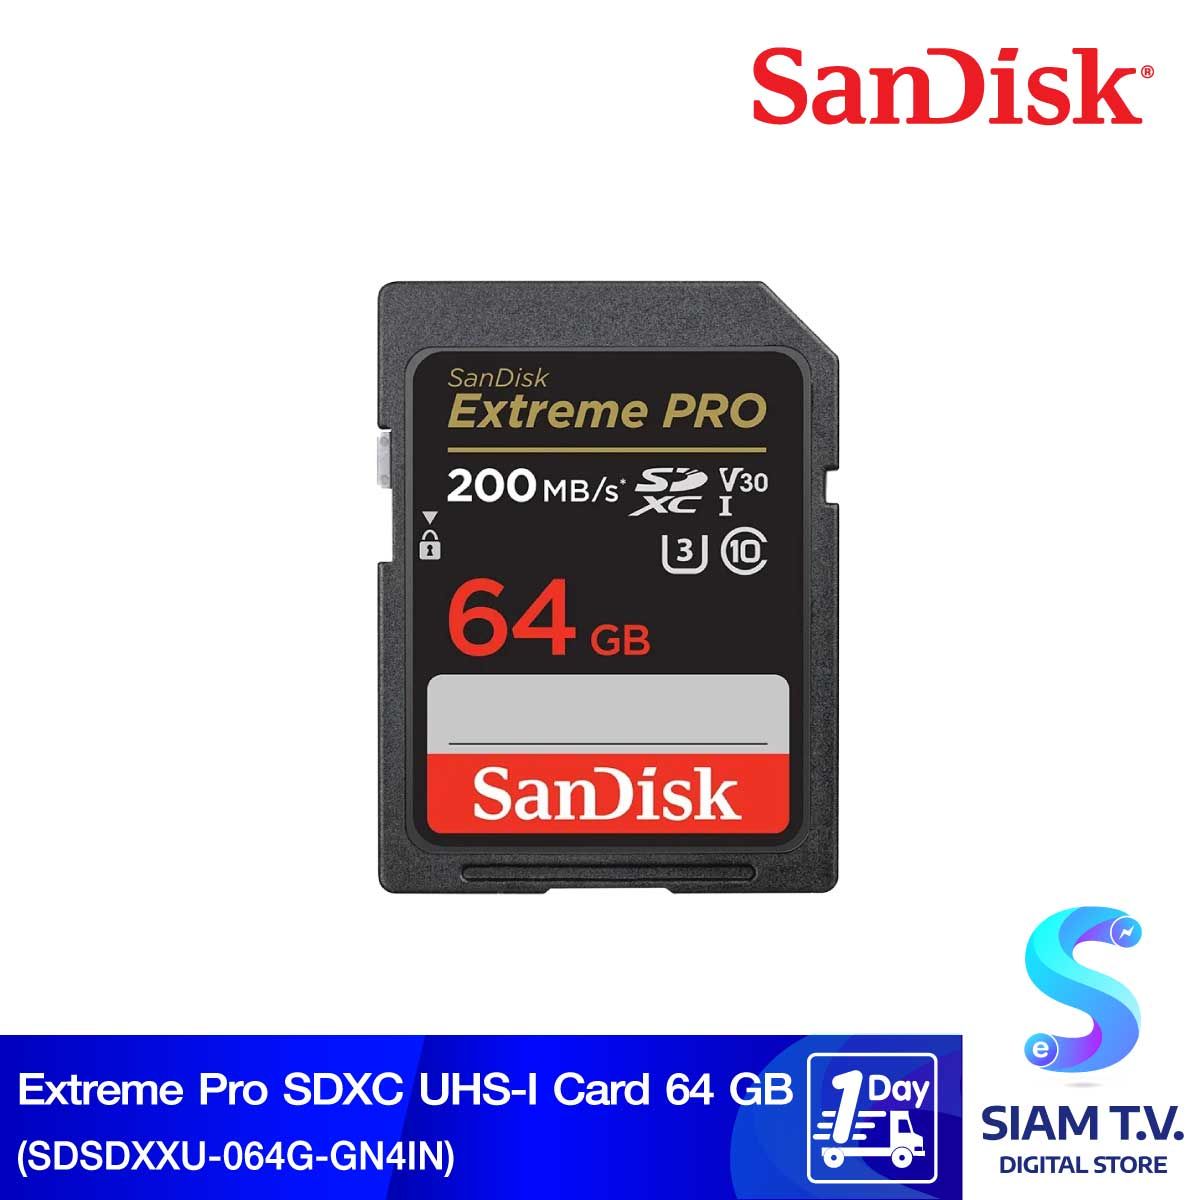 SANDISK SDCARD Extreme Pro 200MB รุ่น SDSDXXU064G (SDSDXXU-064G-GN4IN)